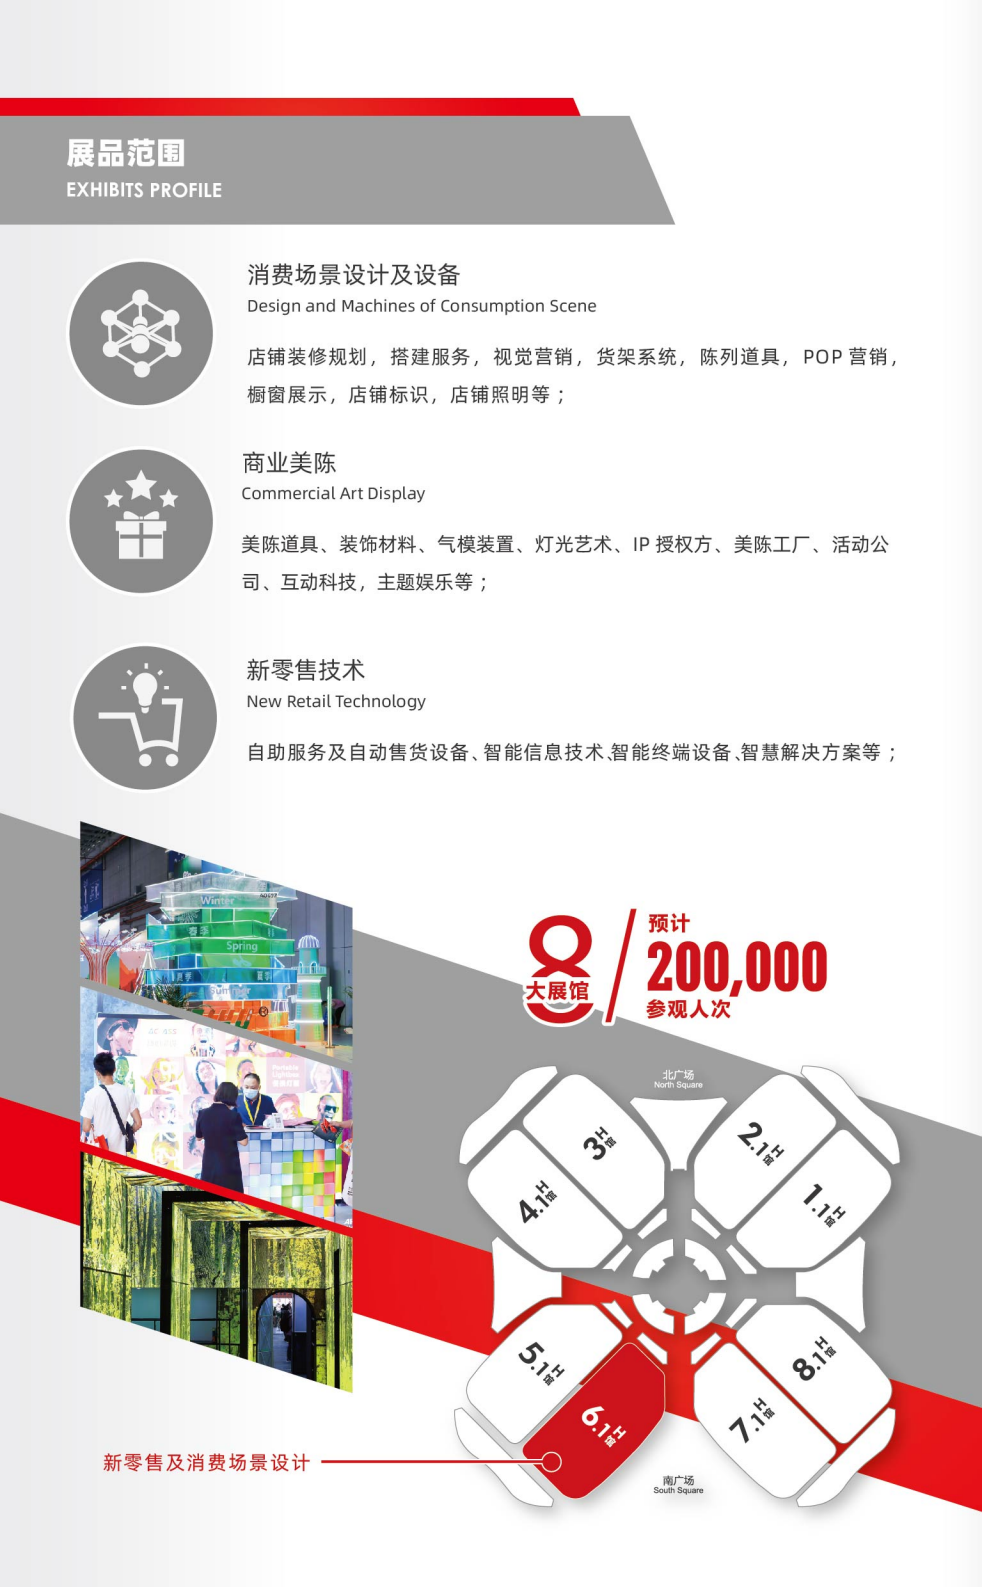 上海国际新零售及消费场景设计展览会